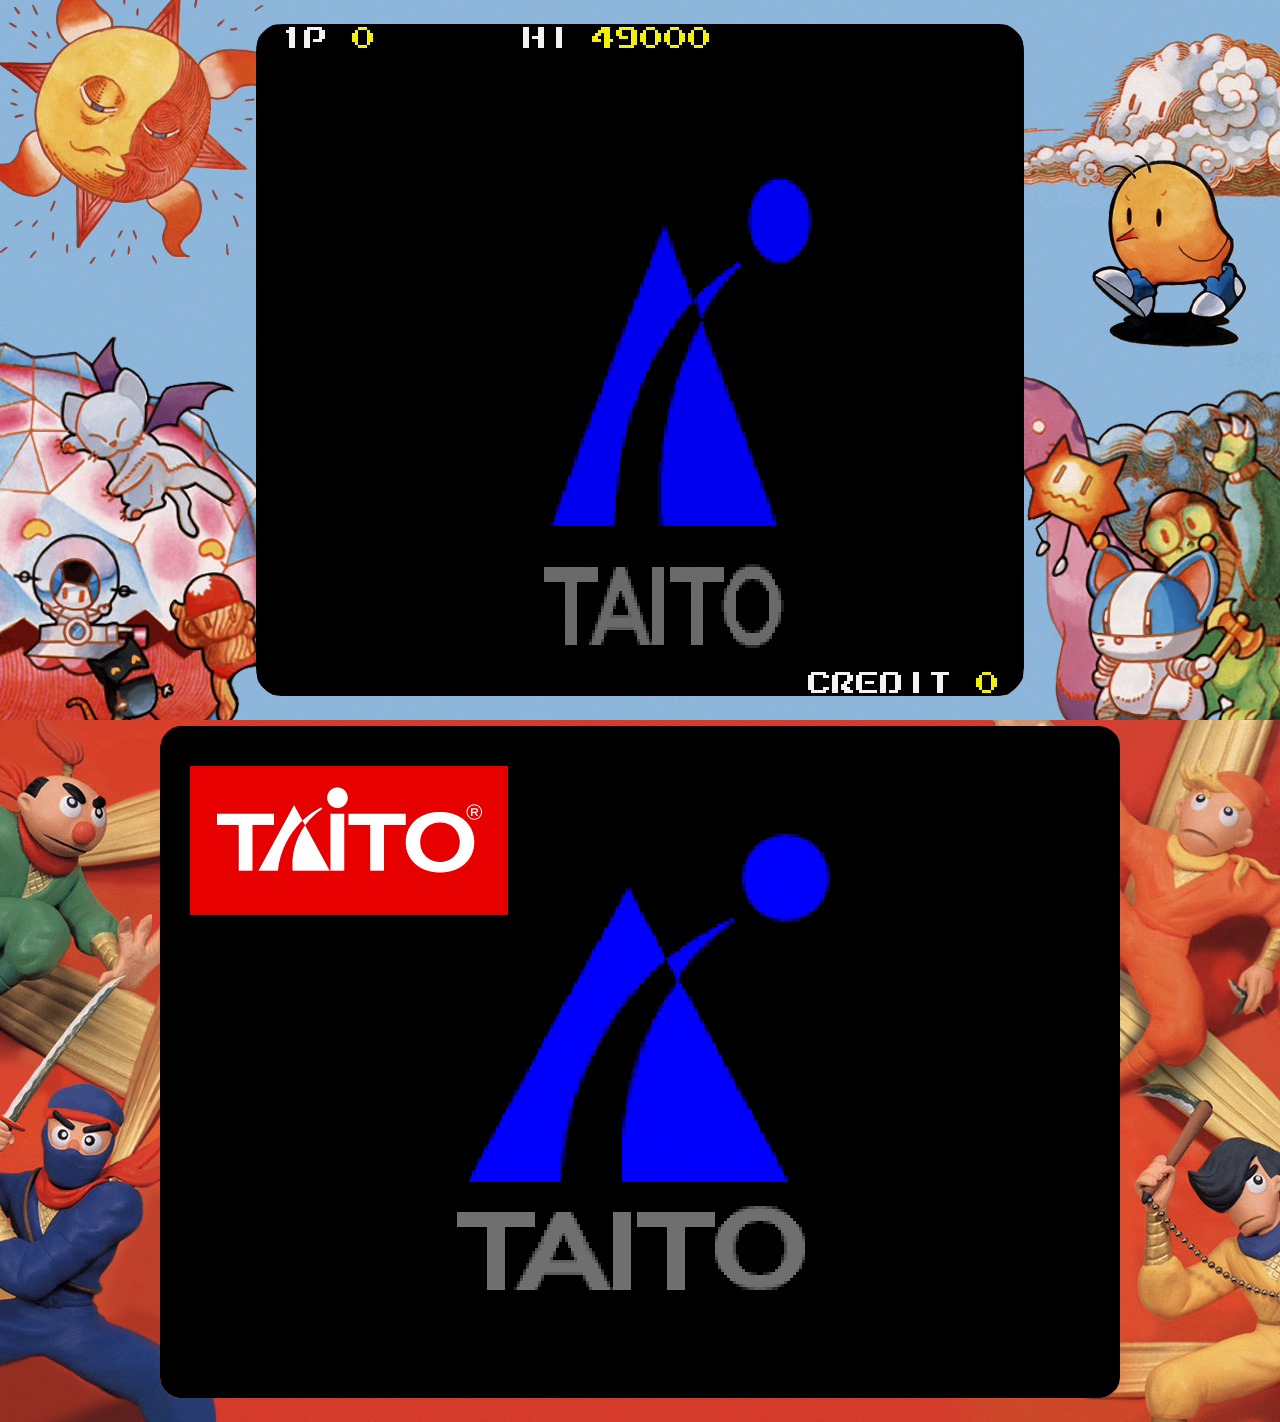 對照Egret II Mini收錄的《忍者小》（下圖），與取自Taito官方網站的商標（紅色小圖），可以看到Egret II Mini版《紐西故事》（上圖）連Taito商標都看得出嚴重變型。